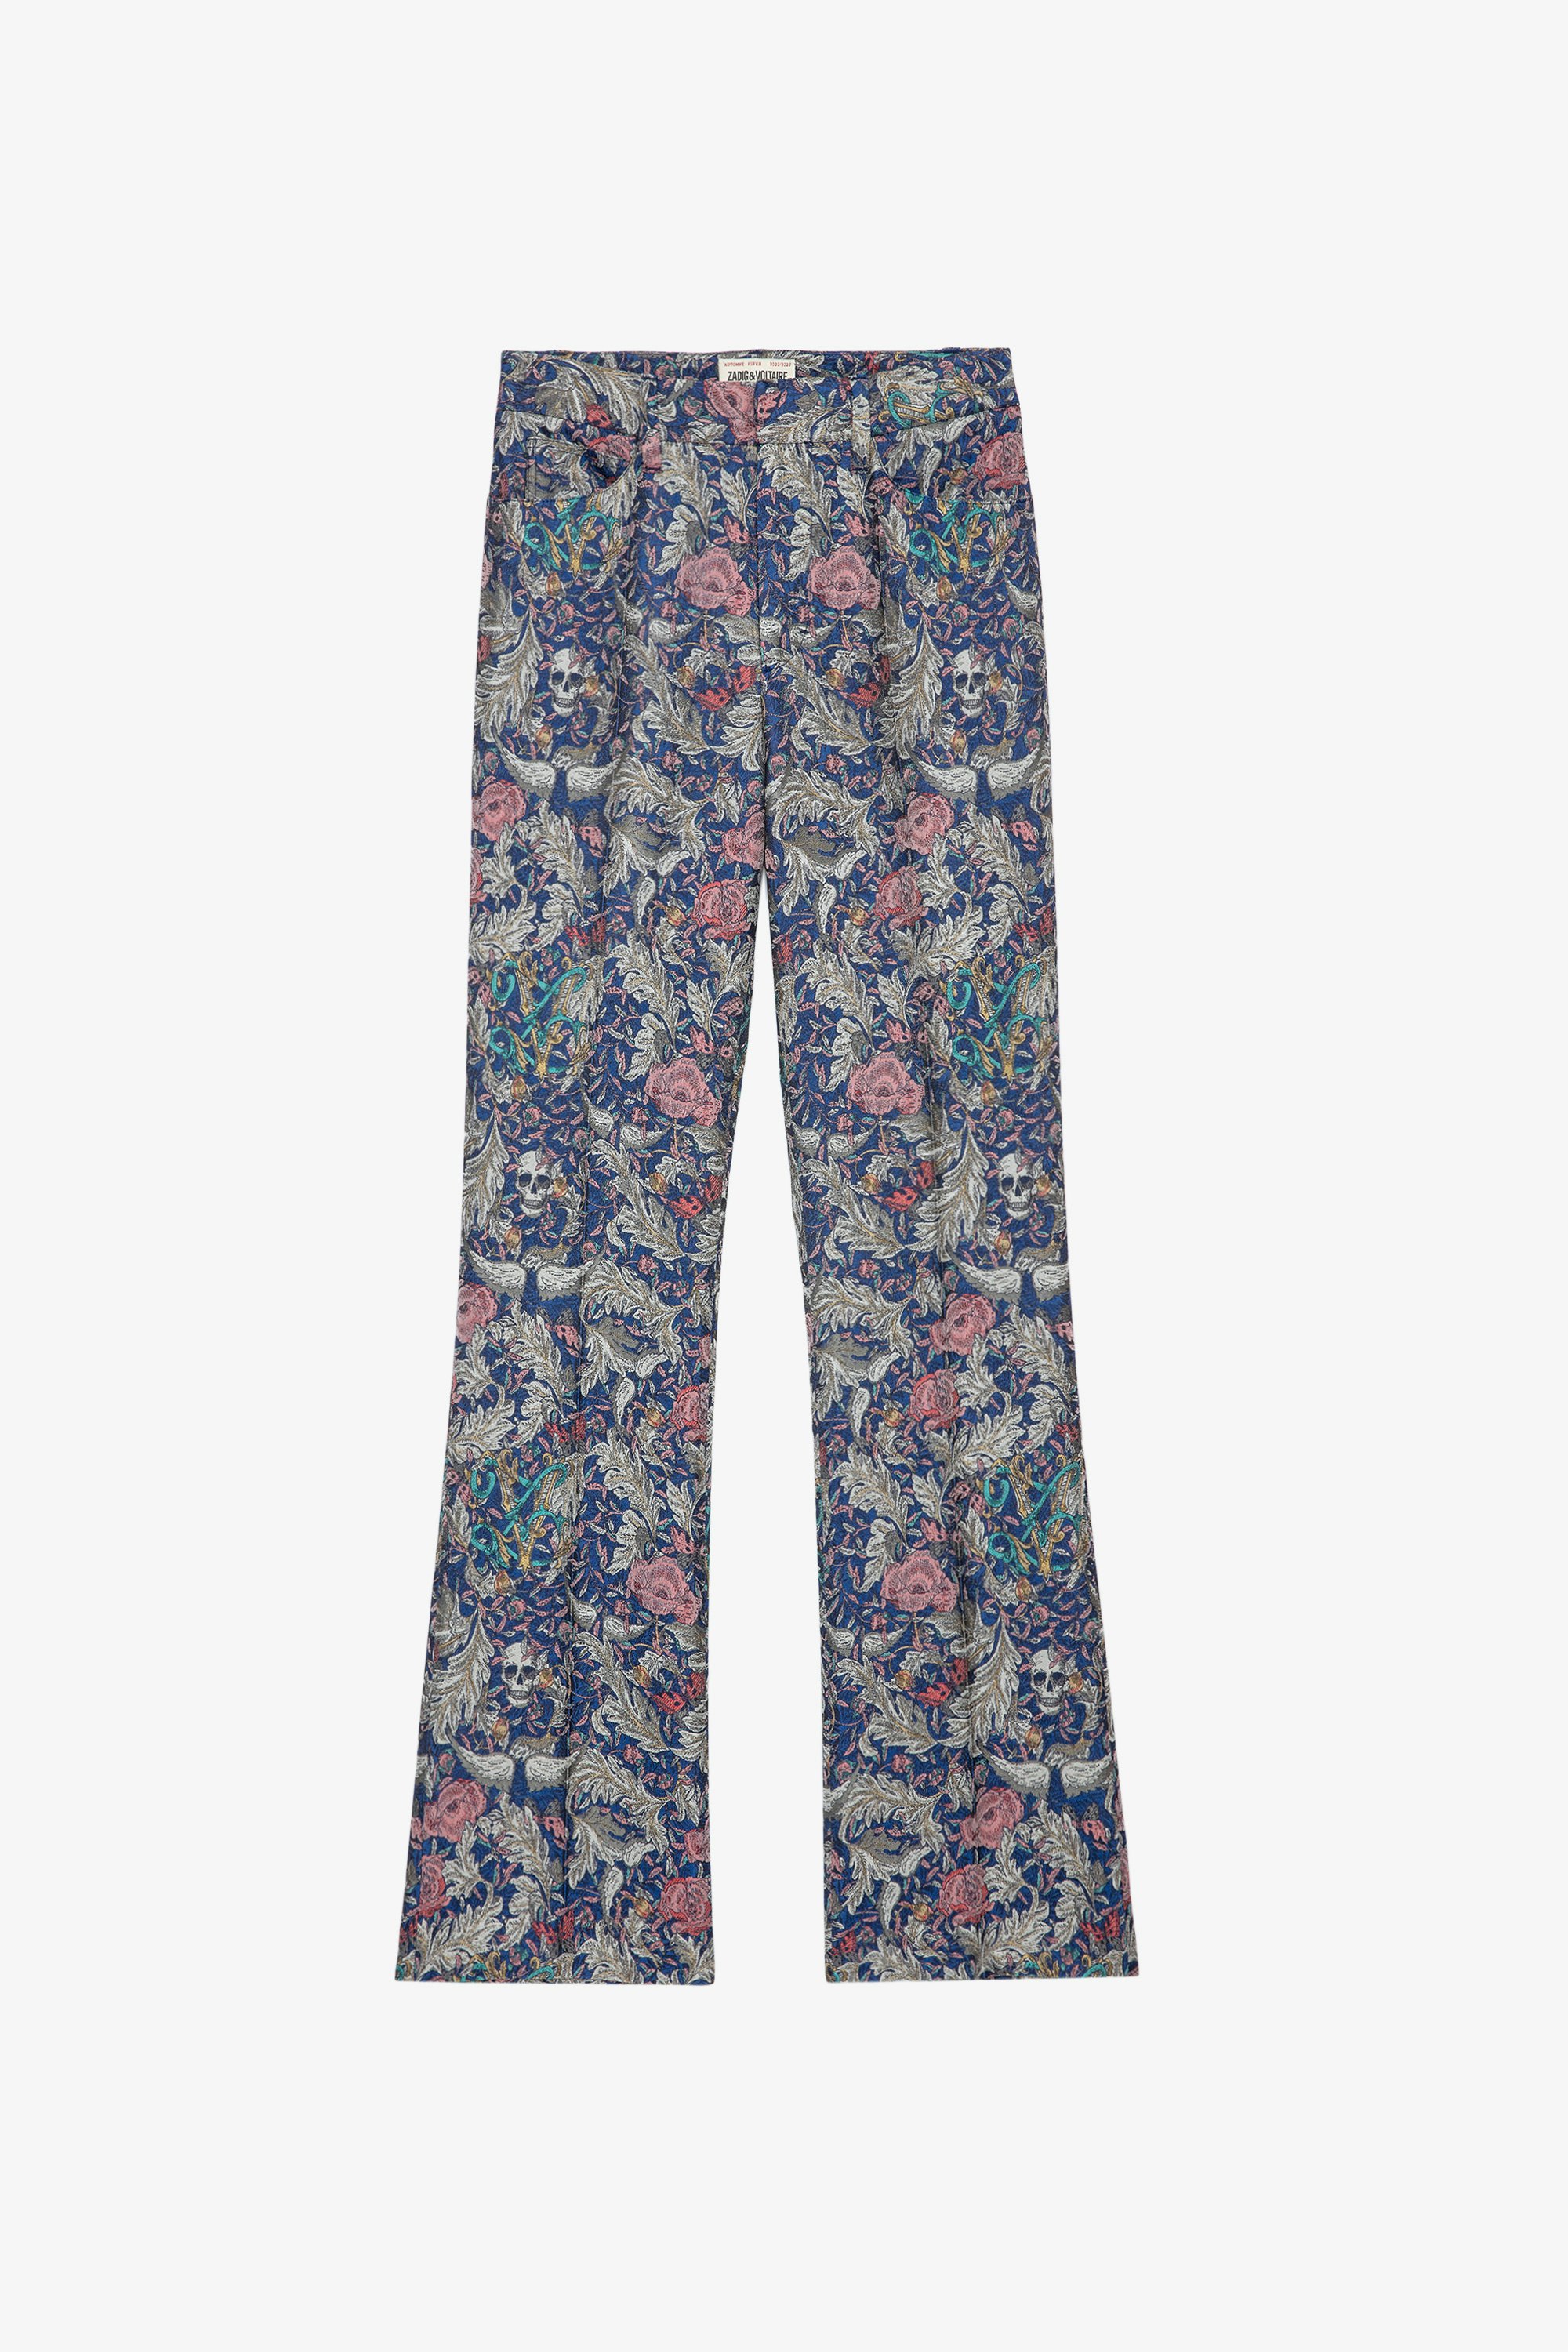 Pantalón Pistol Jac Pantalón de jacquard azul con motivos florales para mujer 